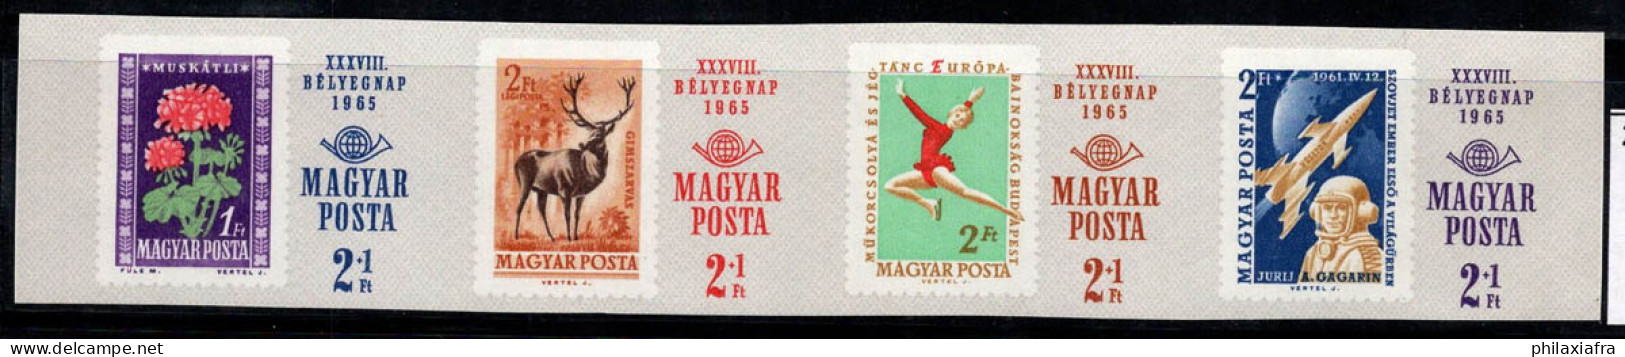 Hongrie 1965 Mi. 2175-78 B Neuf ** 100% Jour Du Timbre, Klaxon De Poste - Neufs